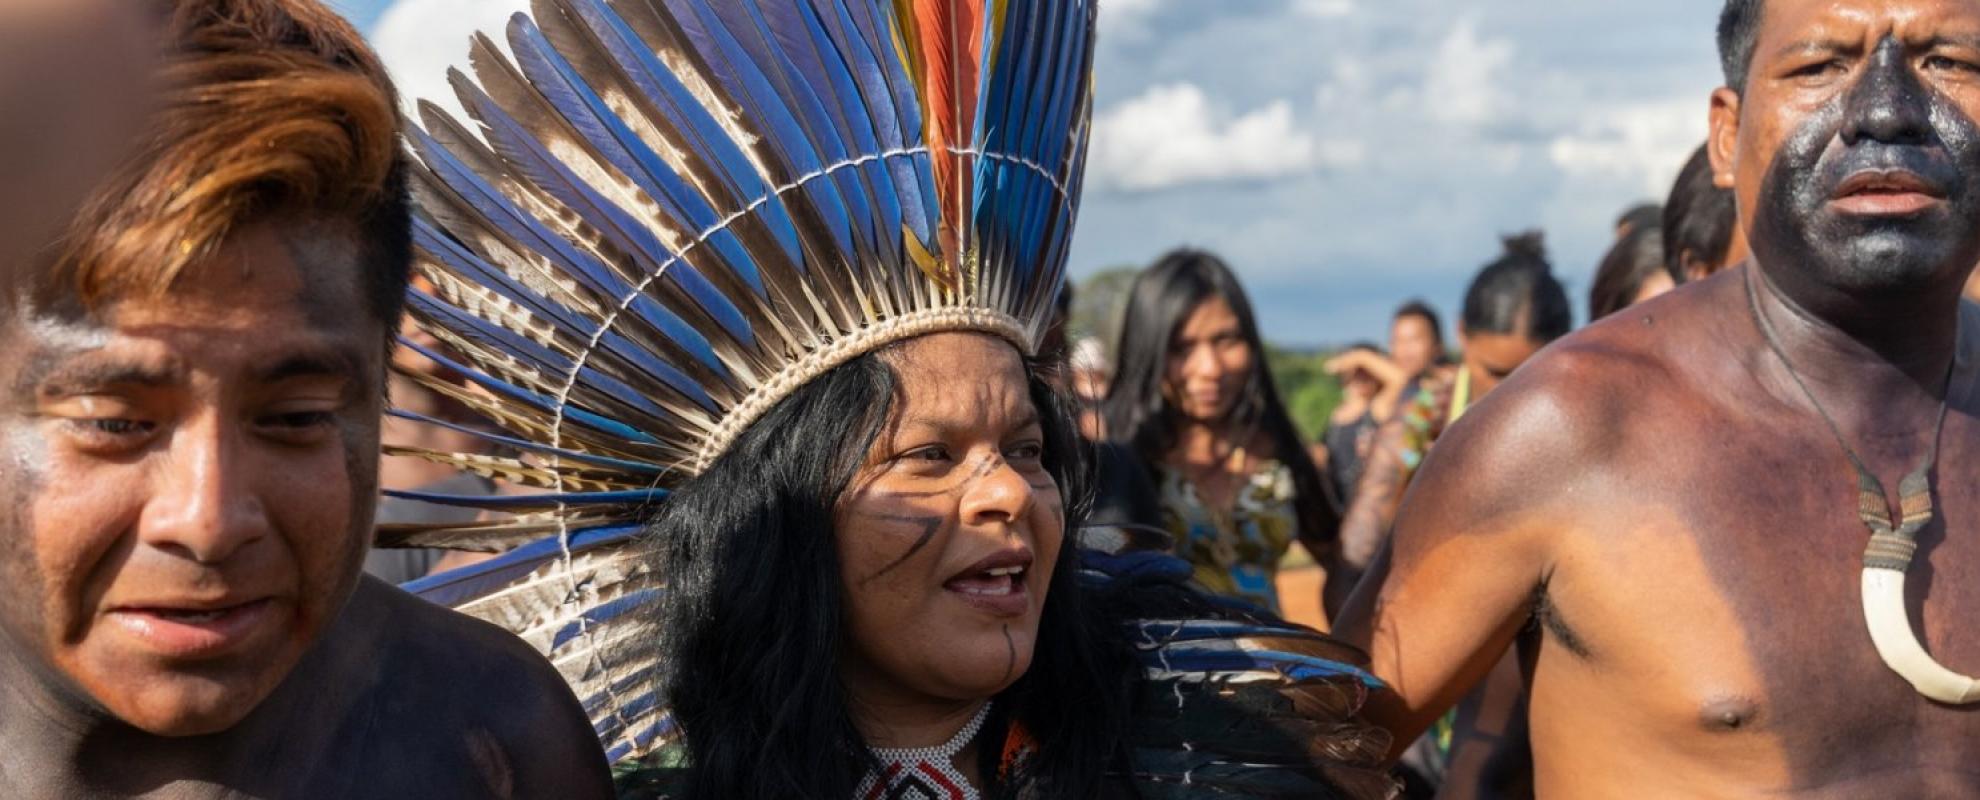 Documentaire: Amazones, Mulheres da Luta